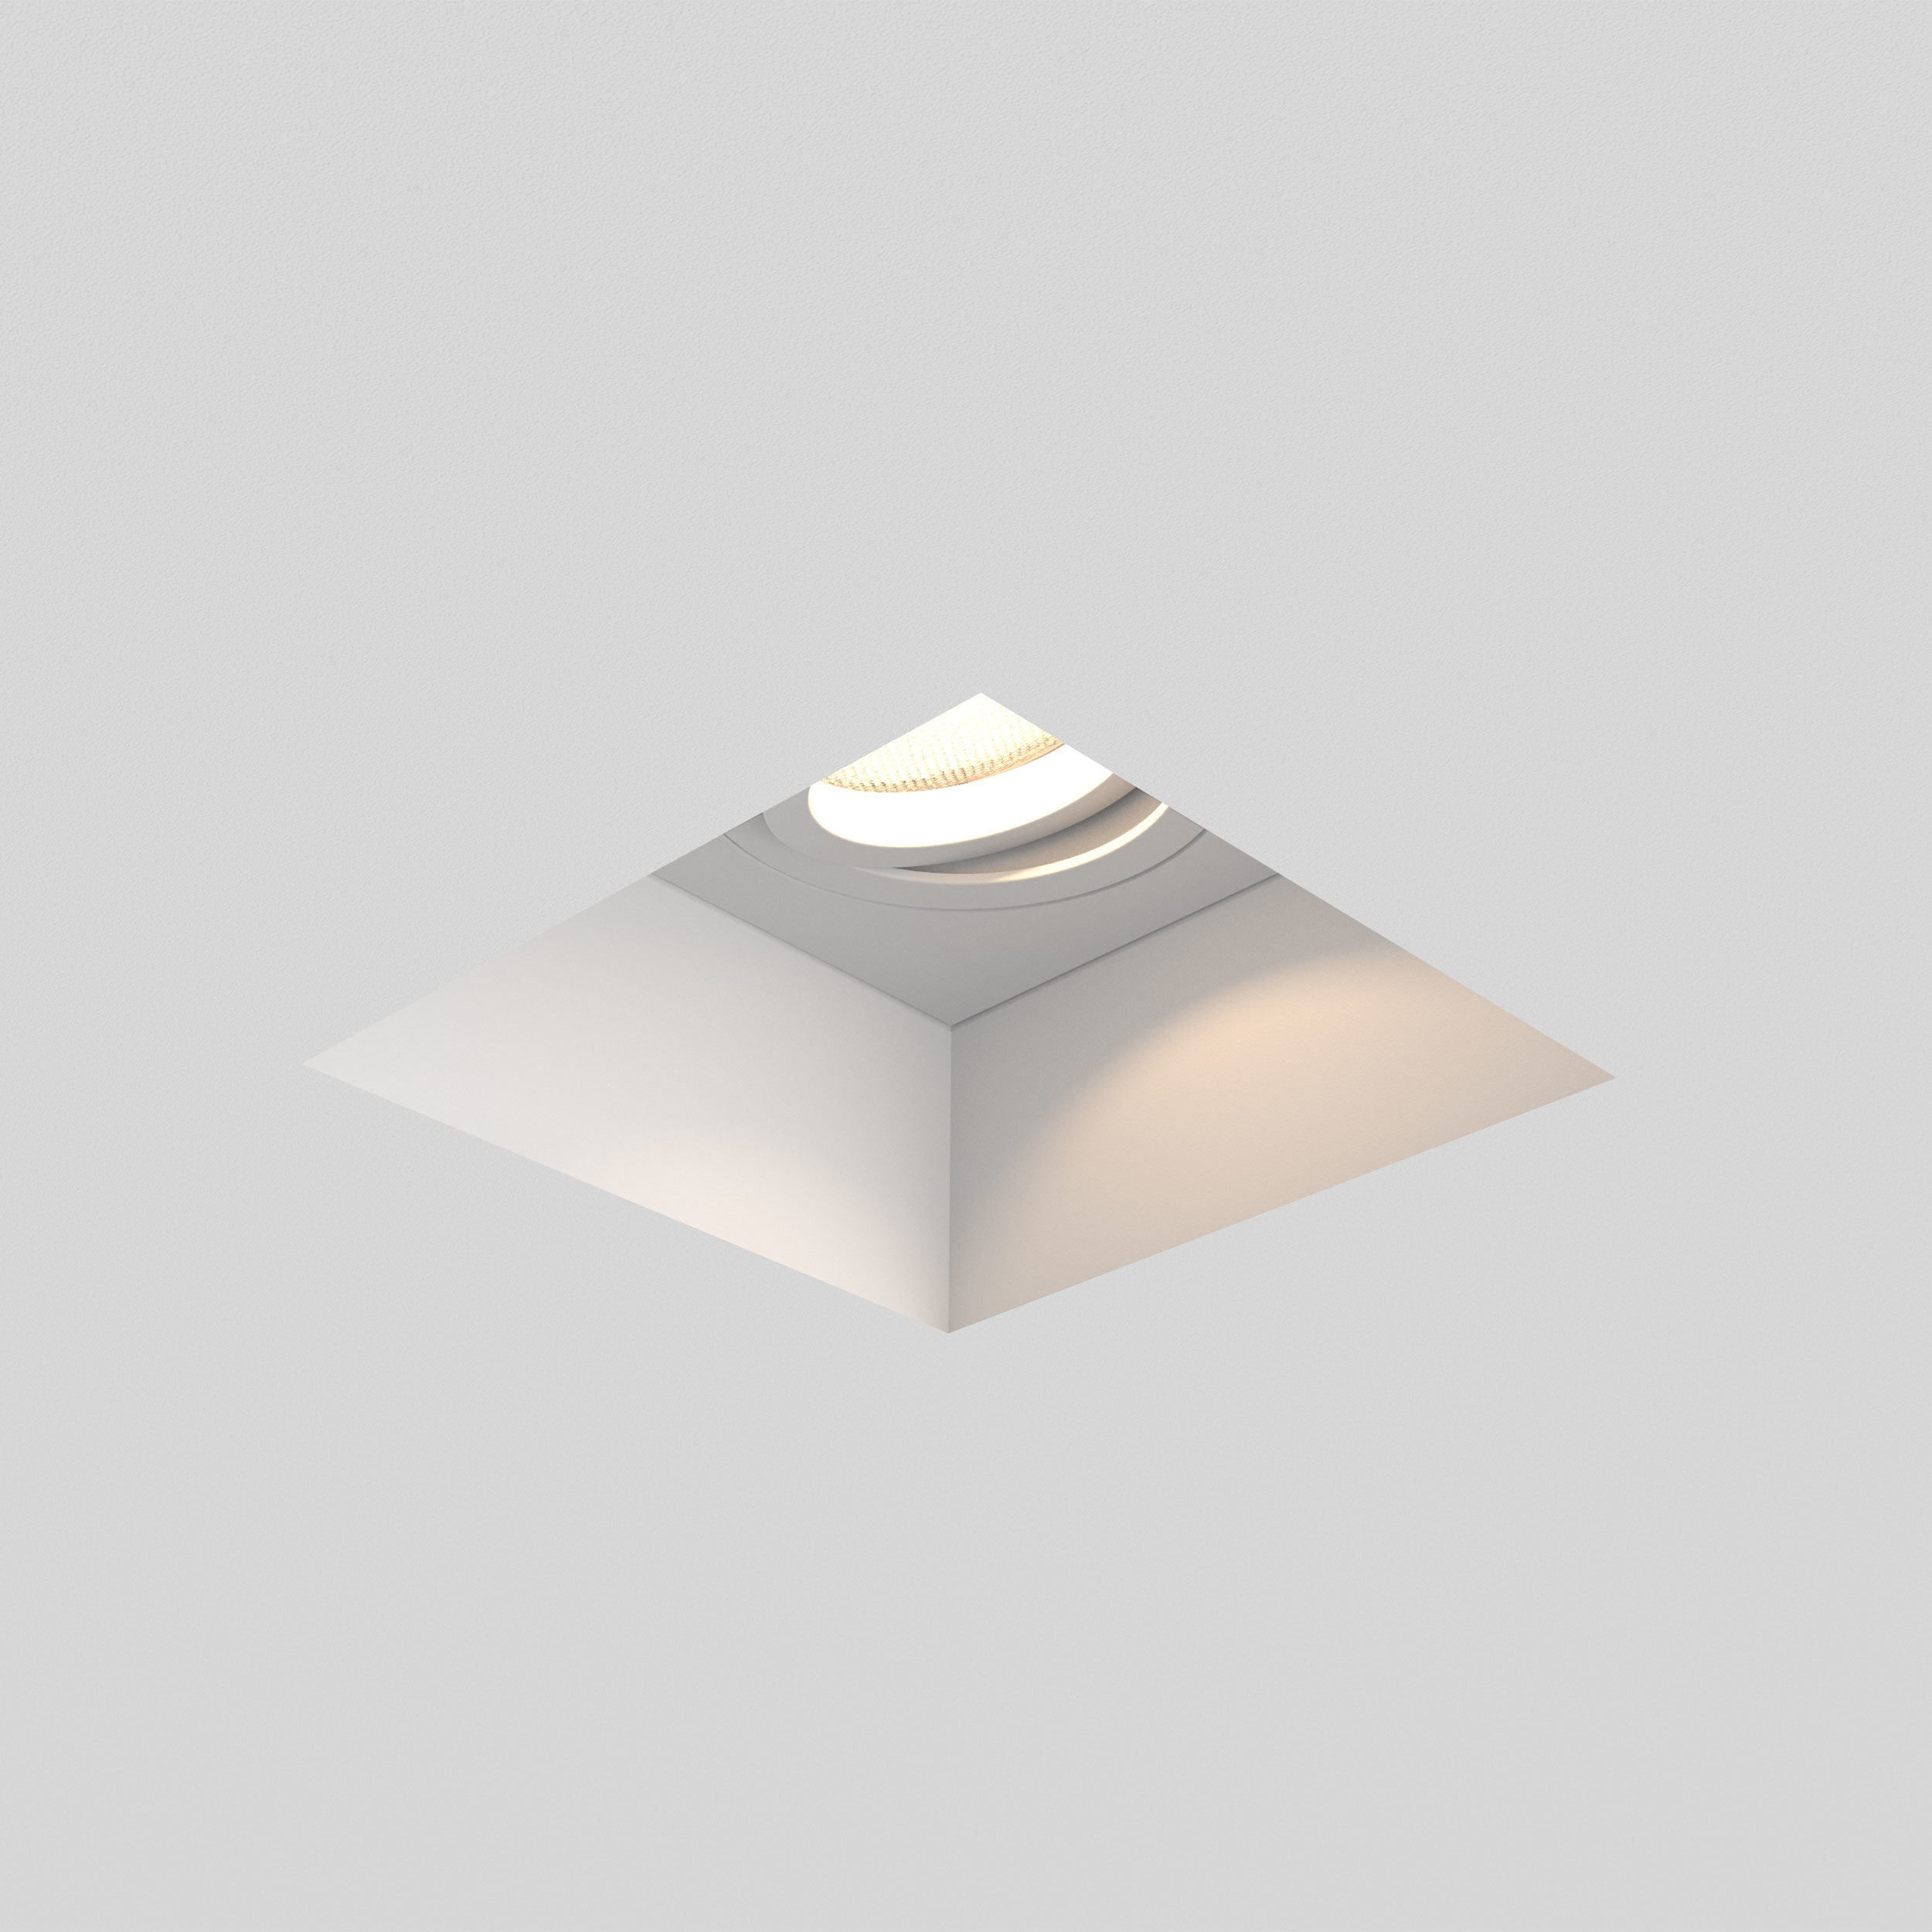 Встраиваемый светильник Astro Blanco 1253007 (7345), 1xGU10x50W, белый, под покраску, гипс, металл - фото 1